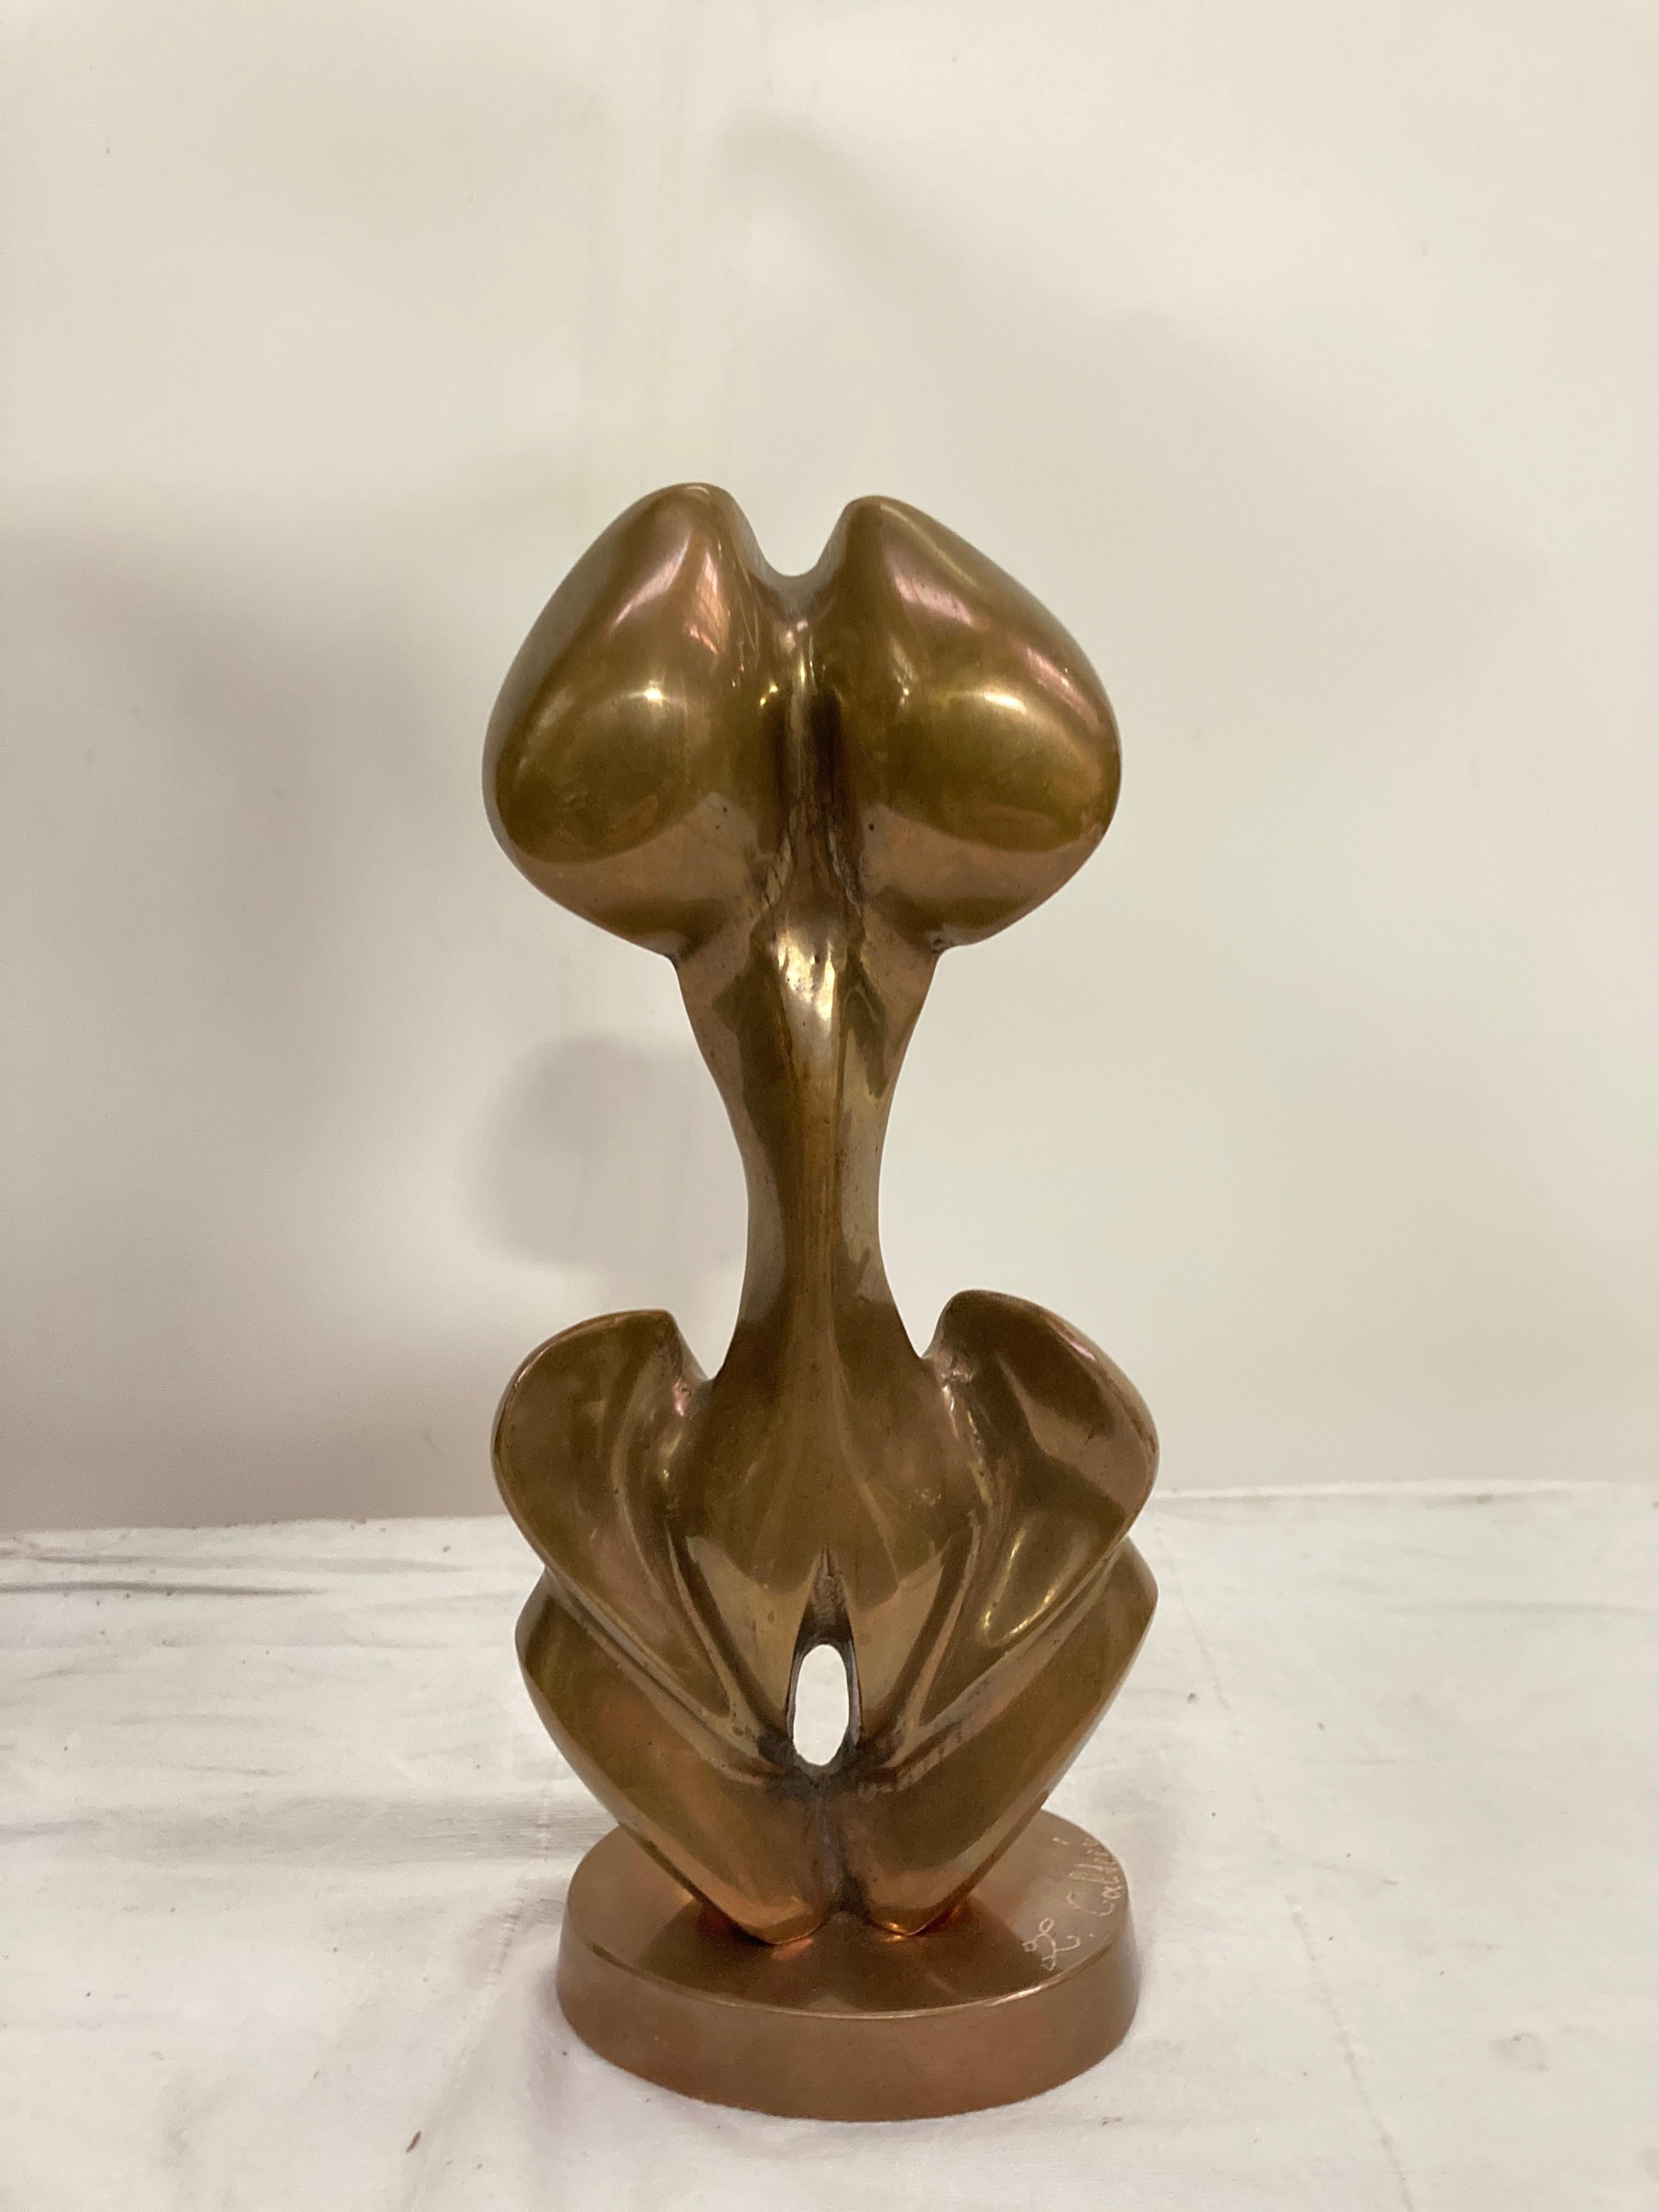 1970's Erotic bronze showing both sex 
Signed L Calderi
Belgium artist